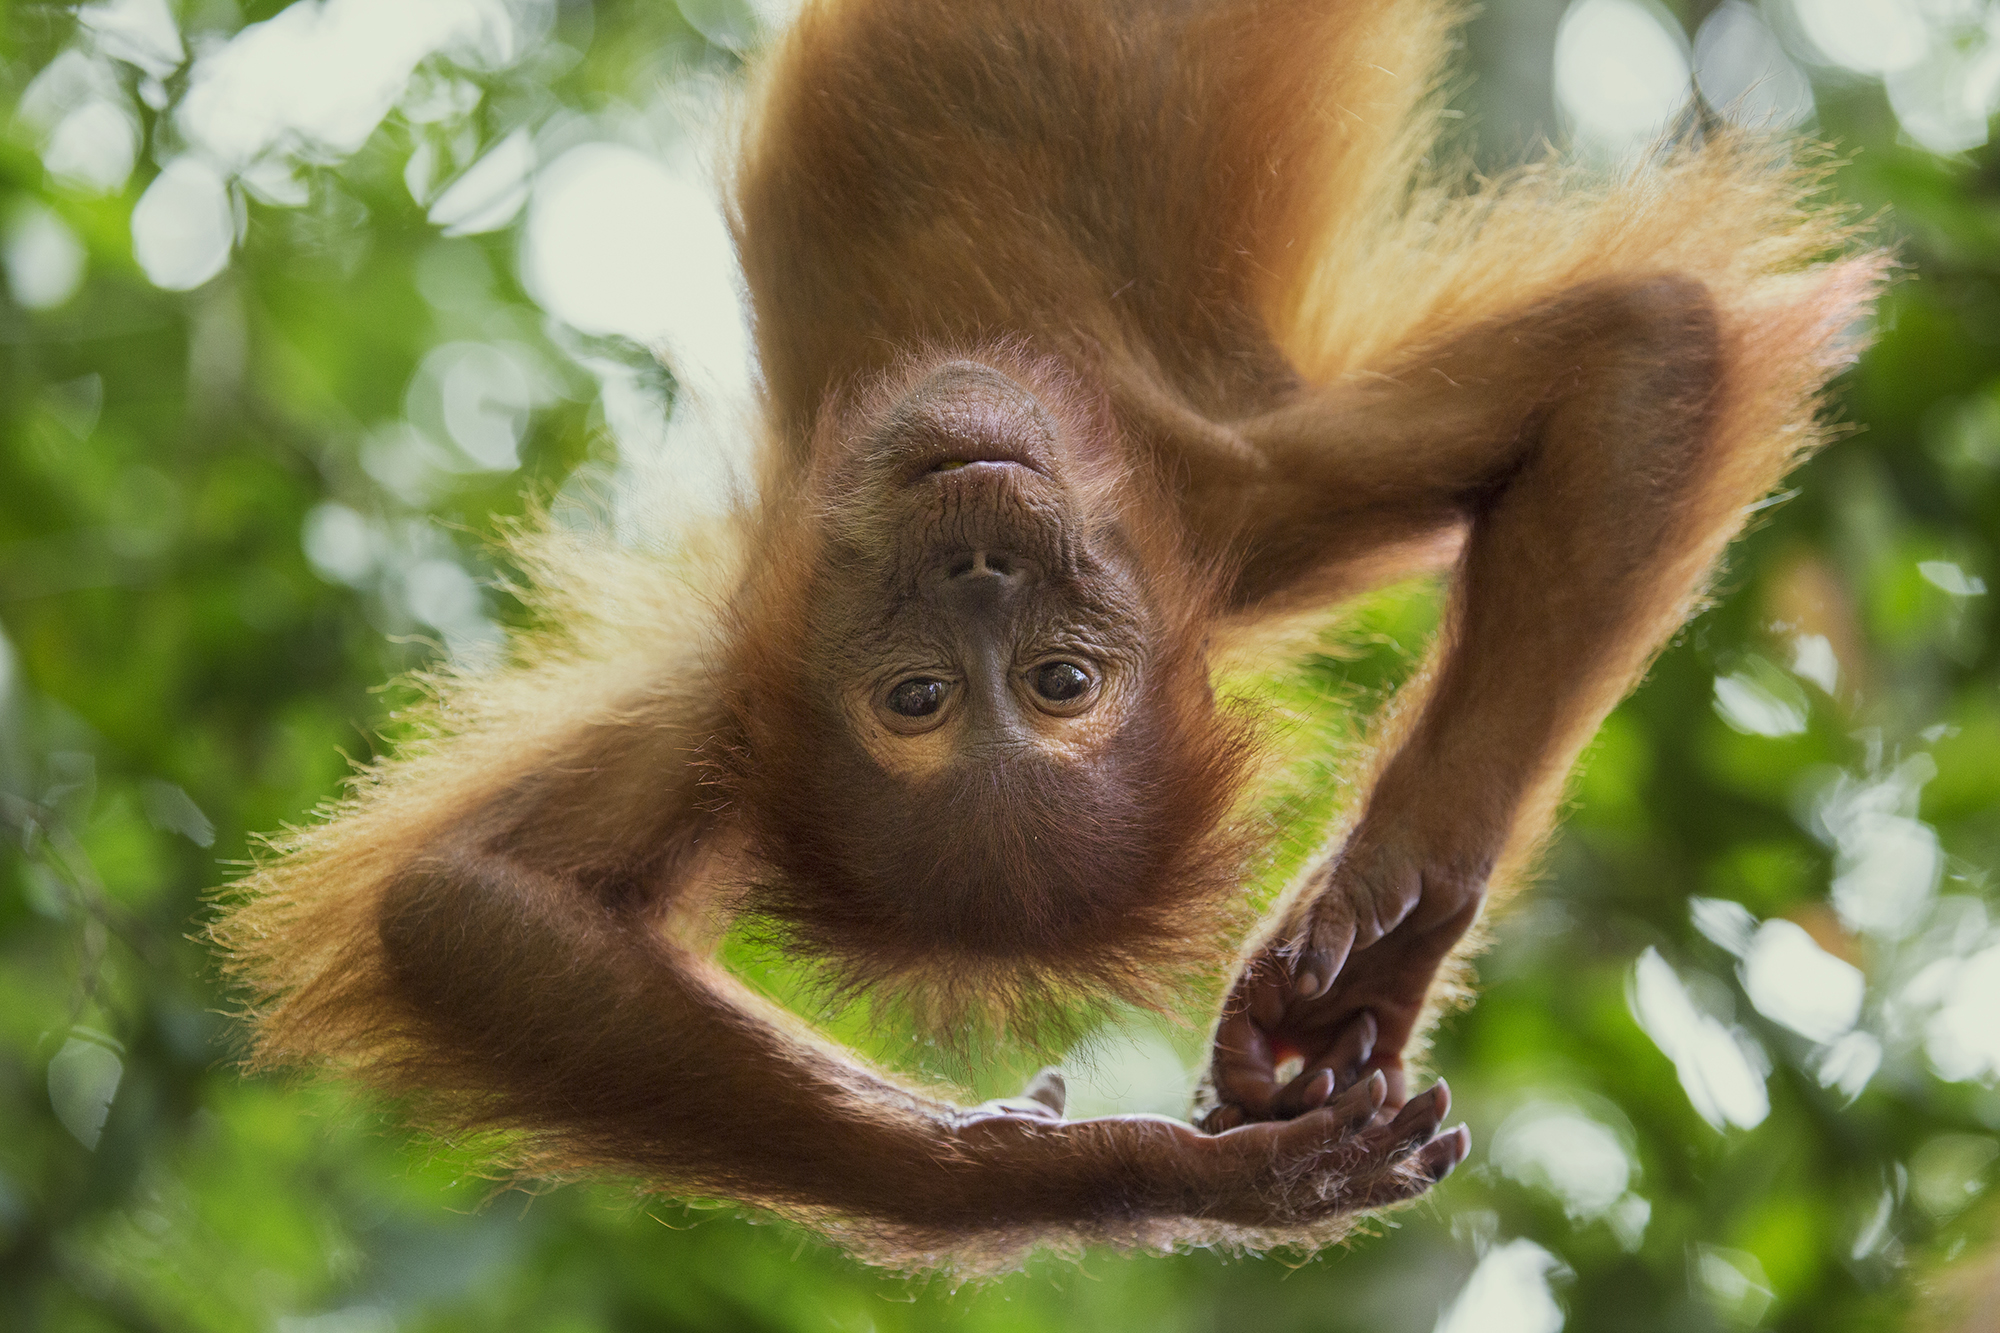 a young sumatran orangutan